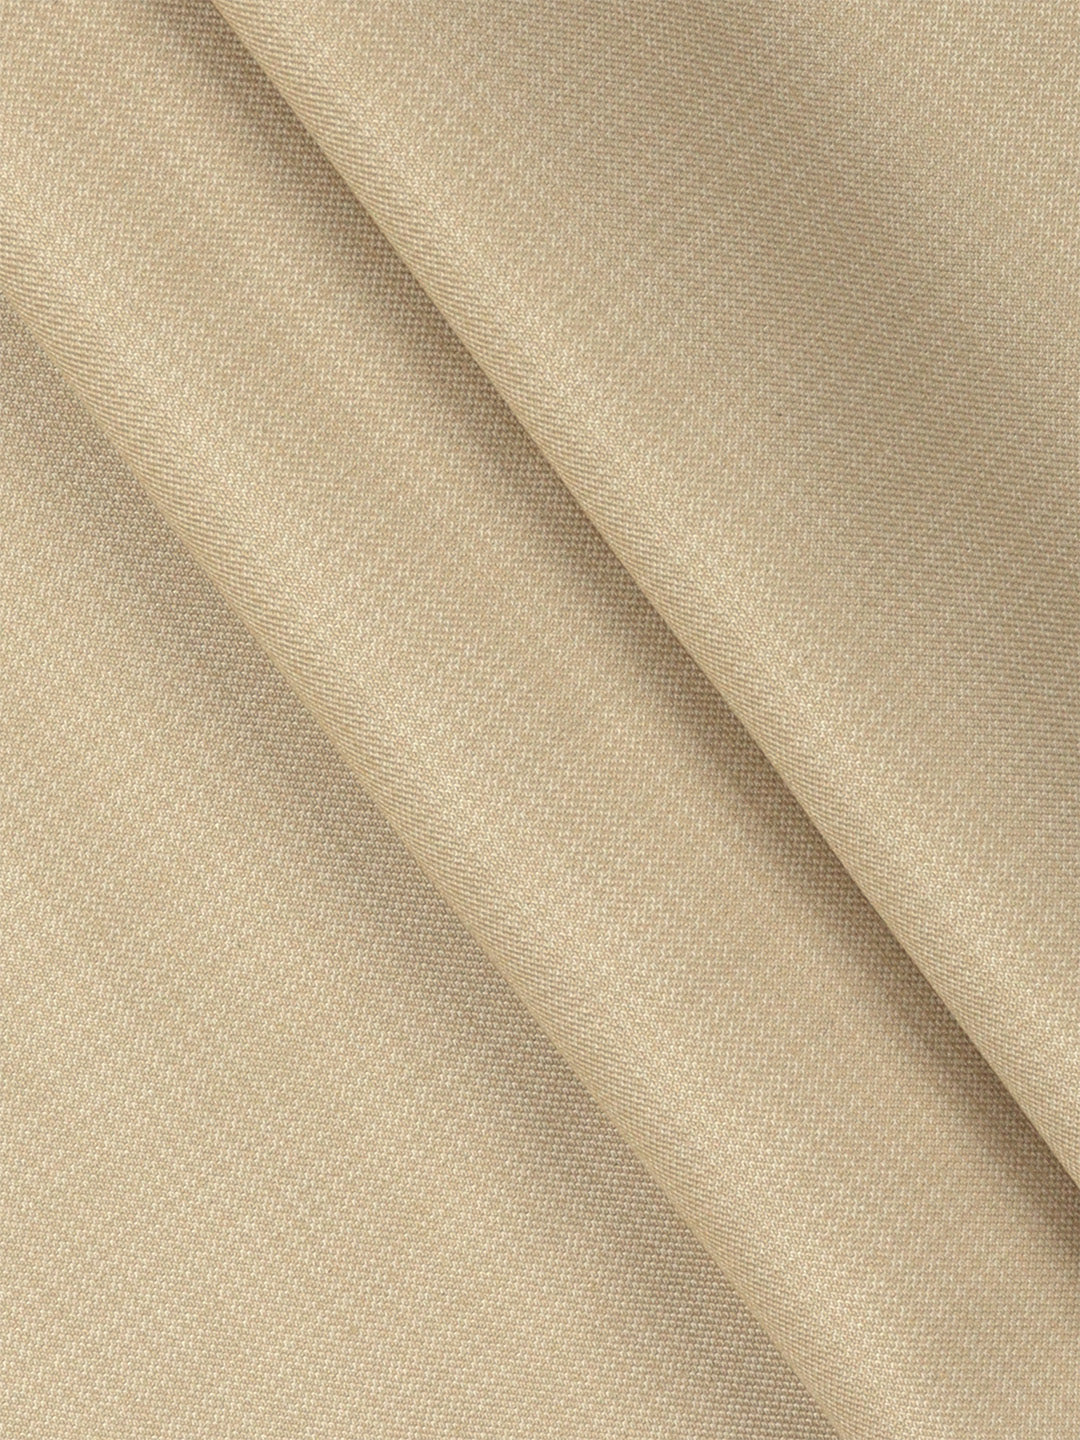 Cotton Blended Sandal Colour Premium Suiting Fabric-Golden Days